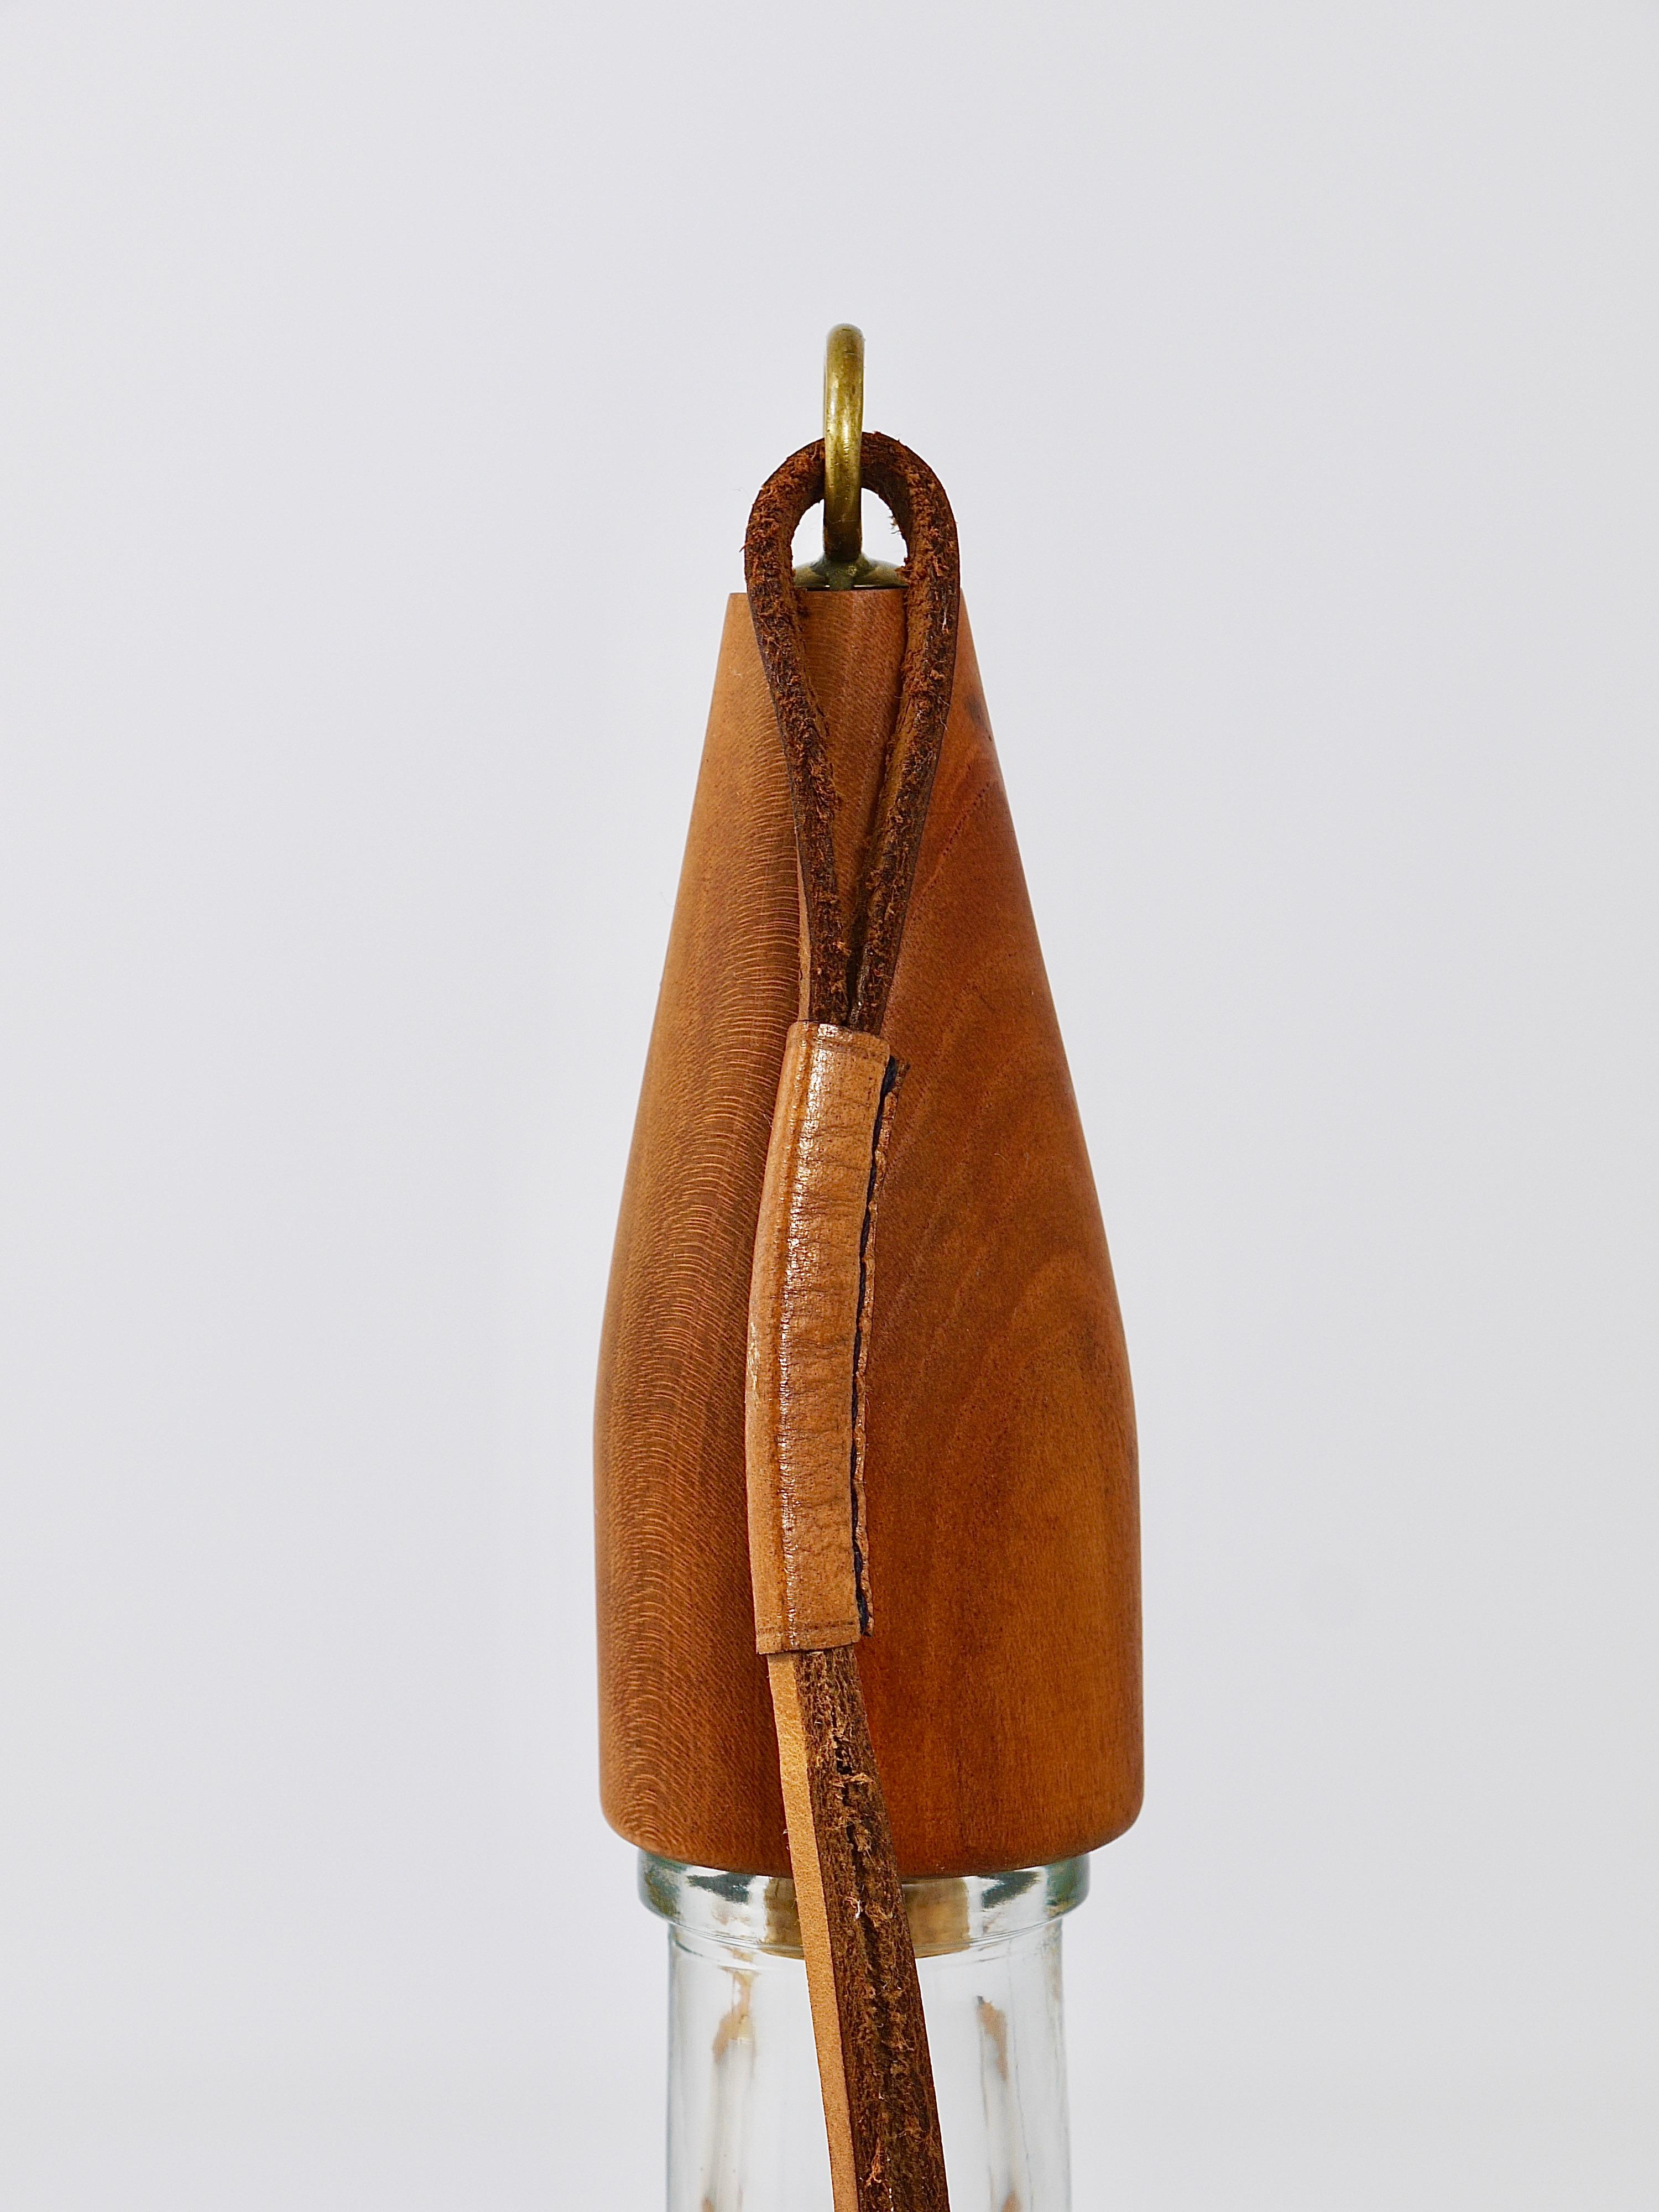 Austrian Carl Auböck Bottle Stopper, Walnut, Brass, Leather, Cork, Austria, 1950s